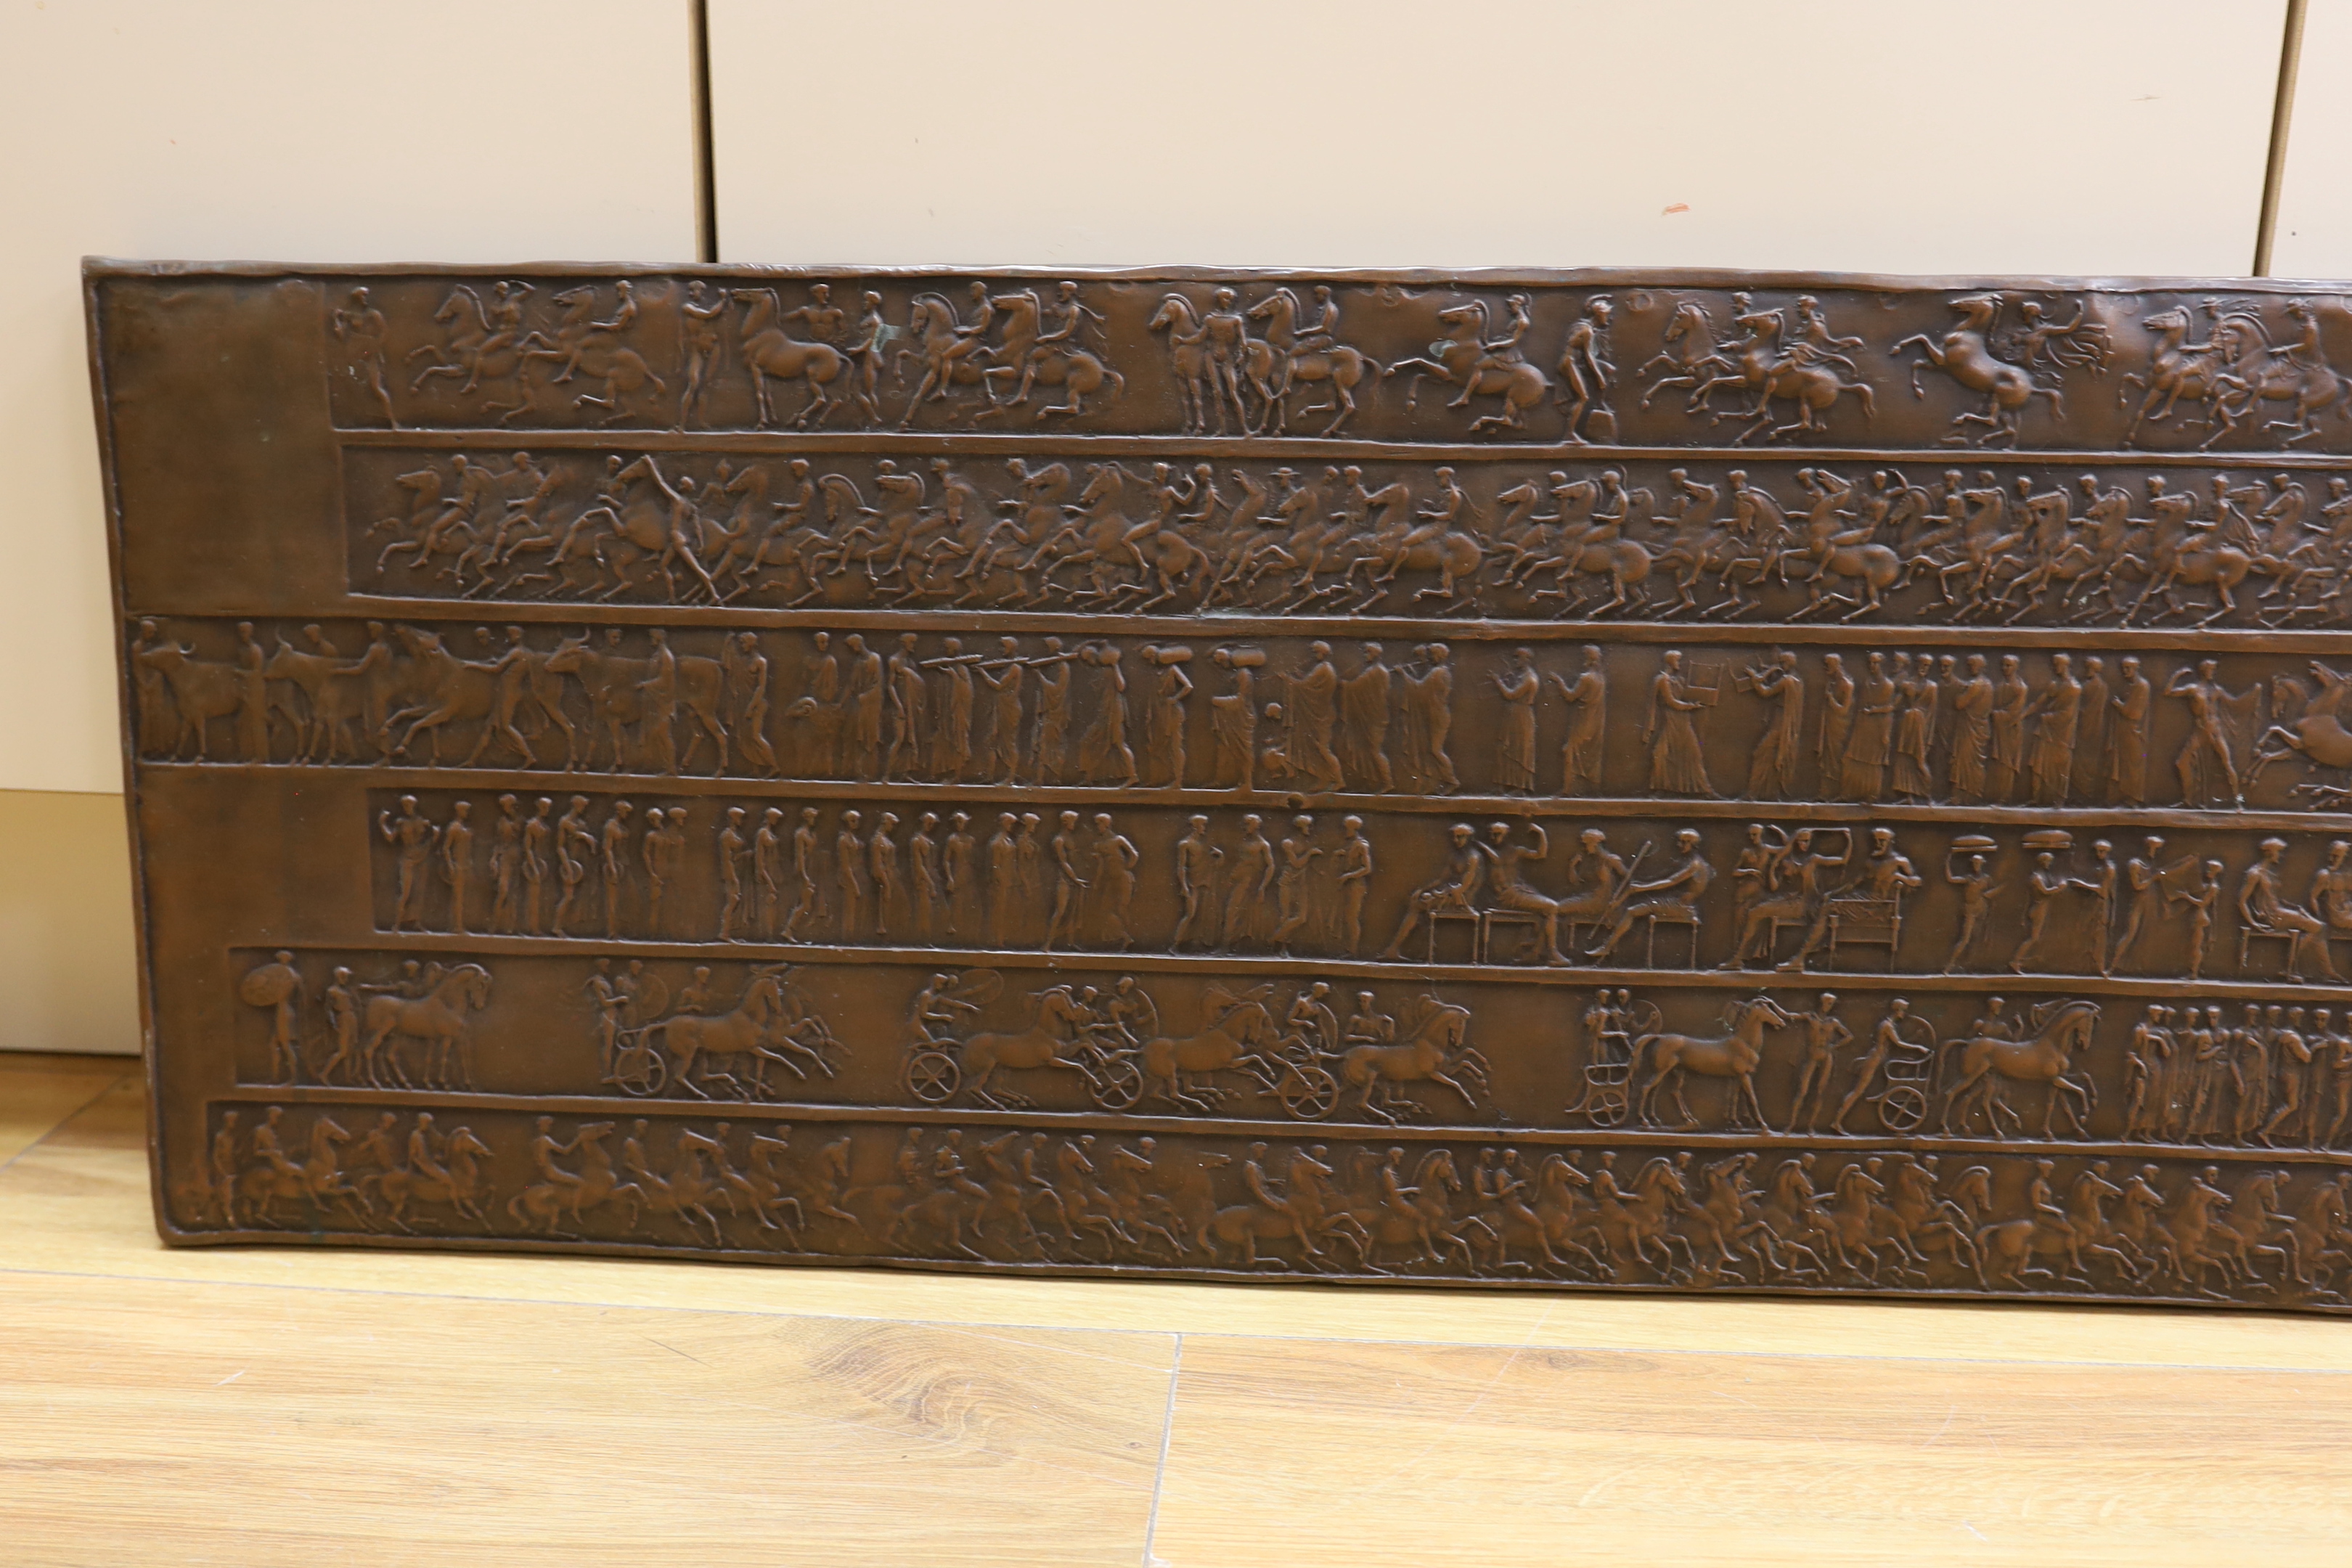 A copper effect resin plaque, 34 x 131cm